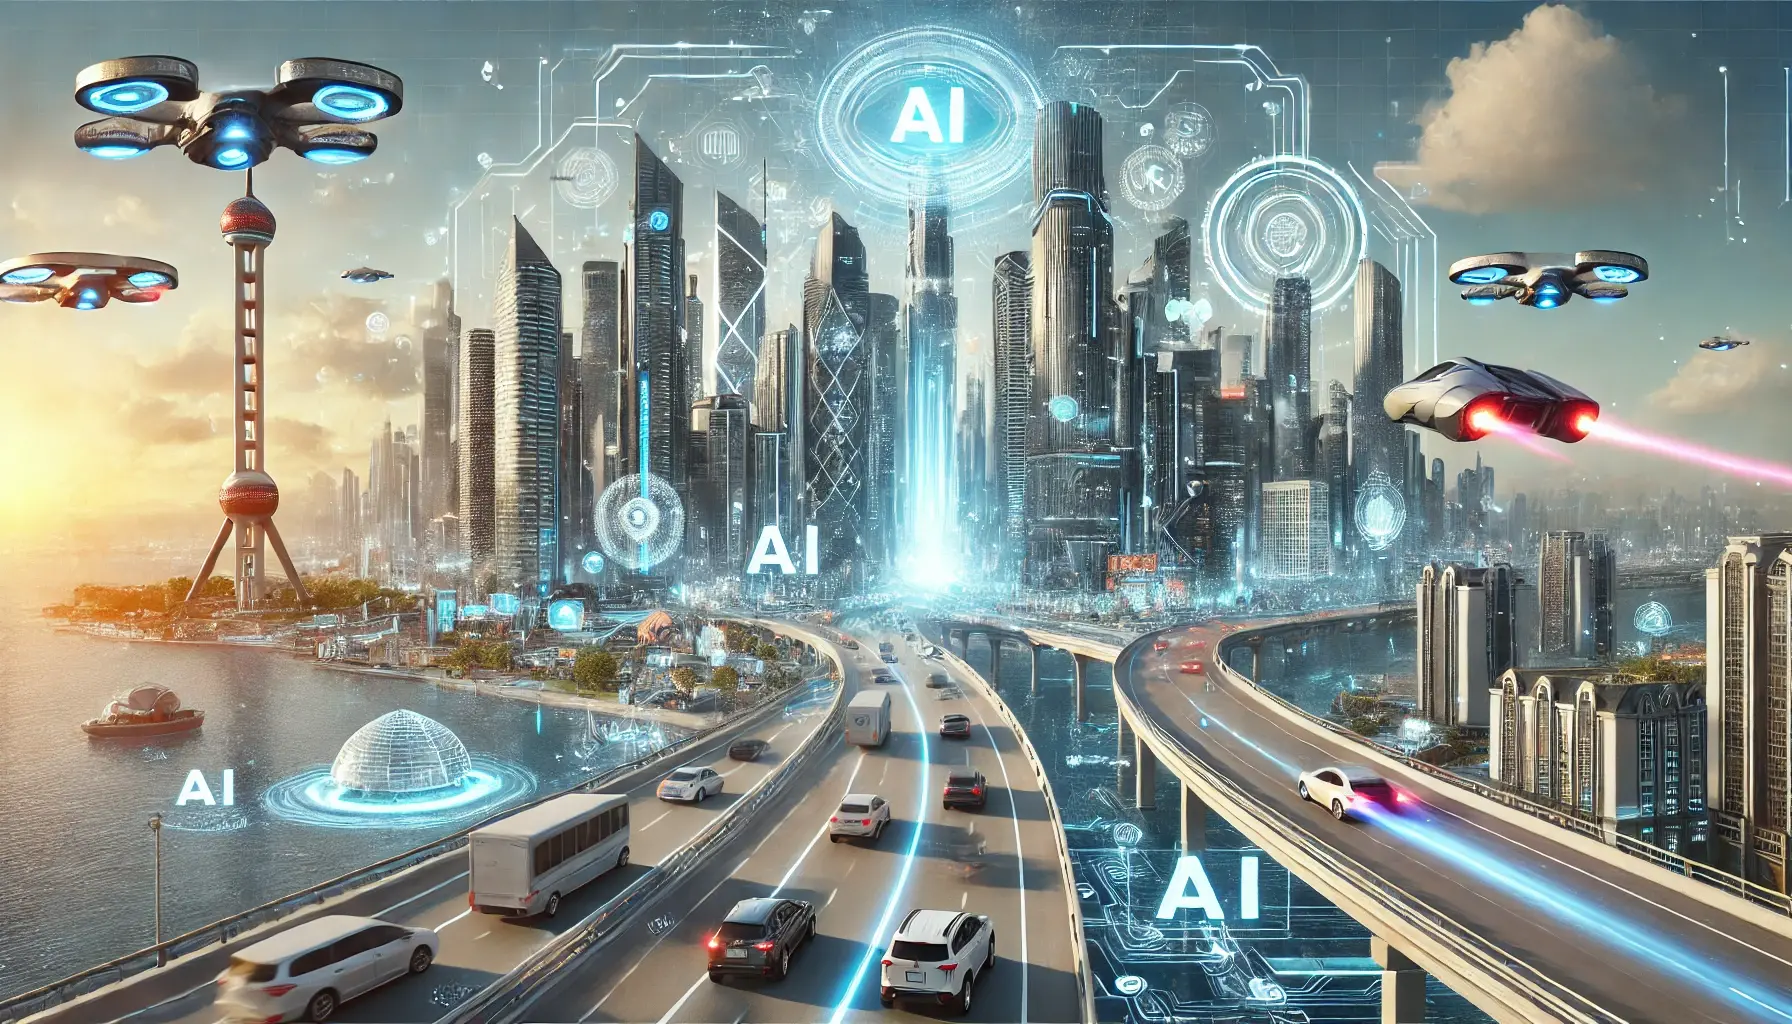 Inteligência Artificial: A Revolução Tecnológica do Século!

A inteligência artificial (IA) é uma tecnologia que vem transformando diversos setores da sociedade nos últimos anos. Com a capacidade de aprender e realizar tarefas de forma autônoma, a IA promete revolucionar a maneira como trabalhamos, nos comunicamos e interagimos com o mundo ao nosso redor. Neste contexto, a previsão de que a IA irá gerar R$ 1 trilhão em 2030 tem gerado grande expectativa e impactos na economia mundial.